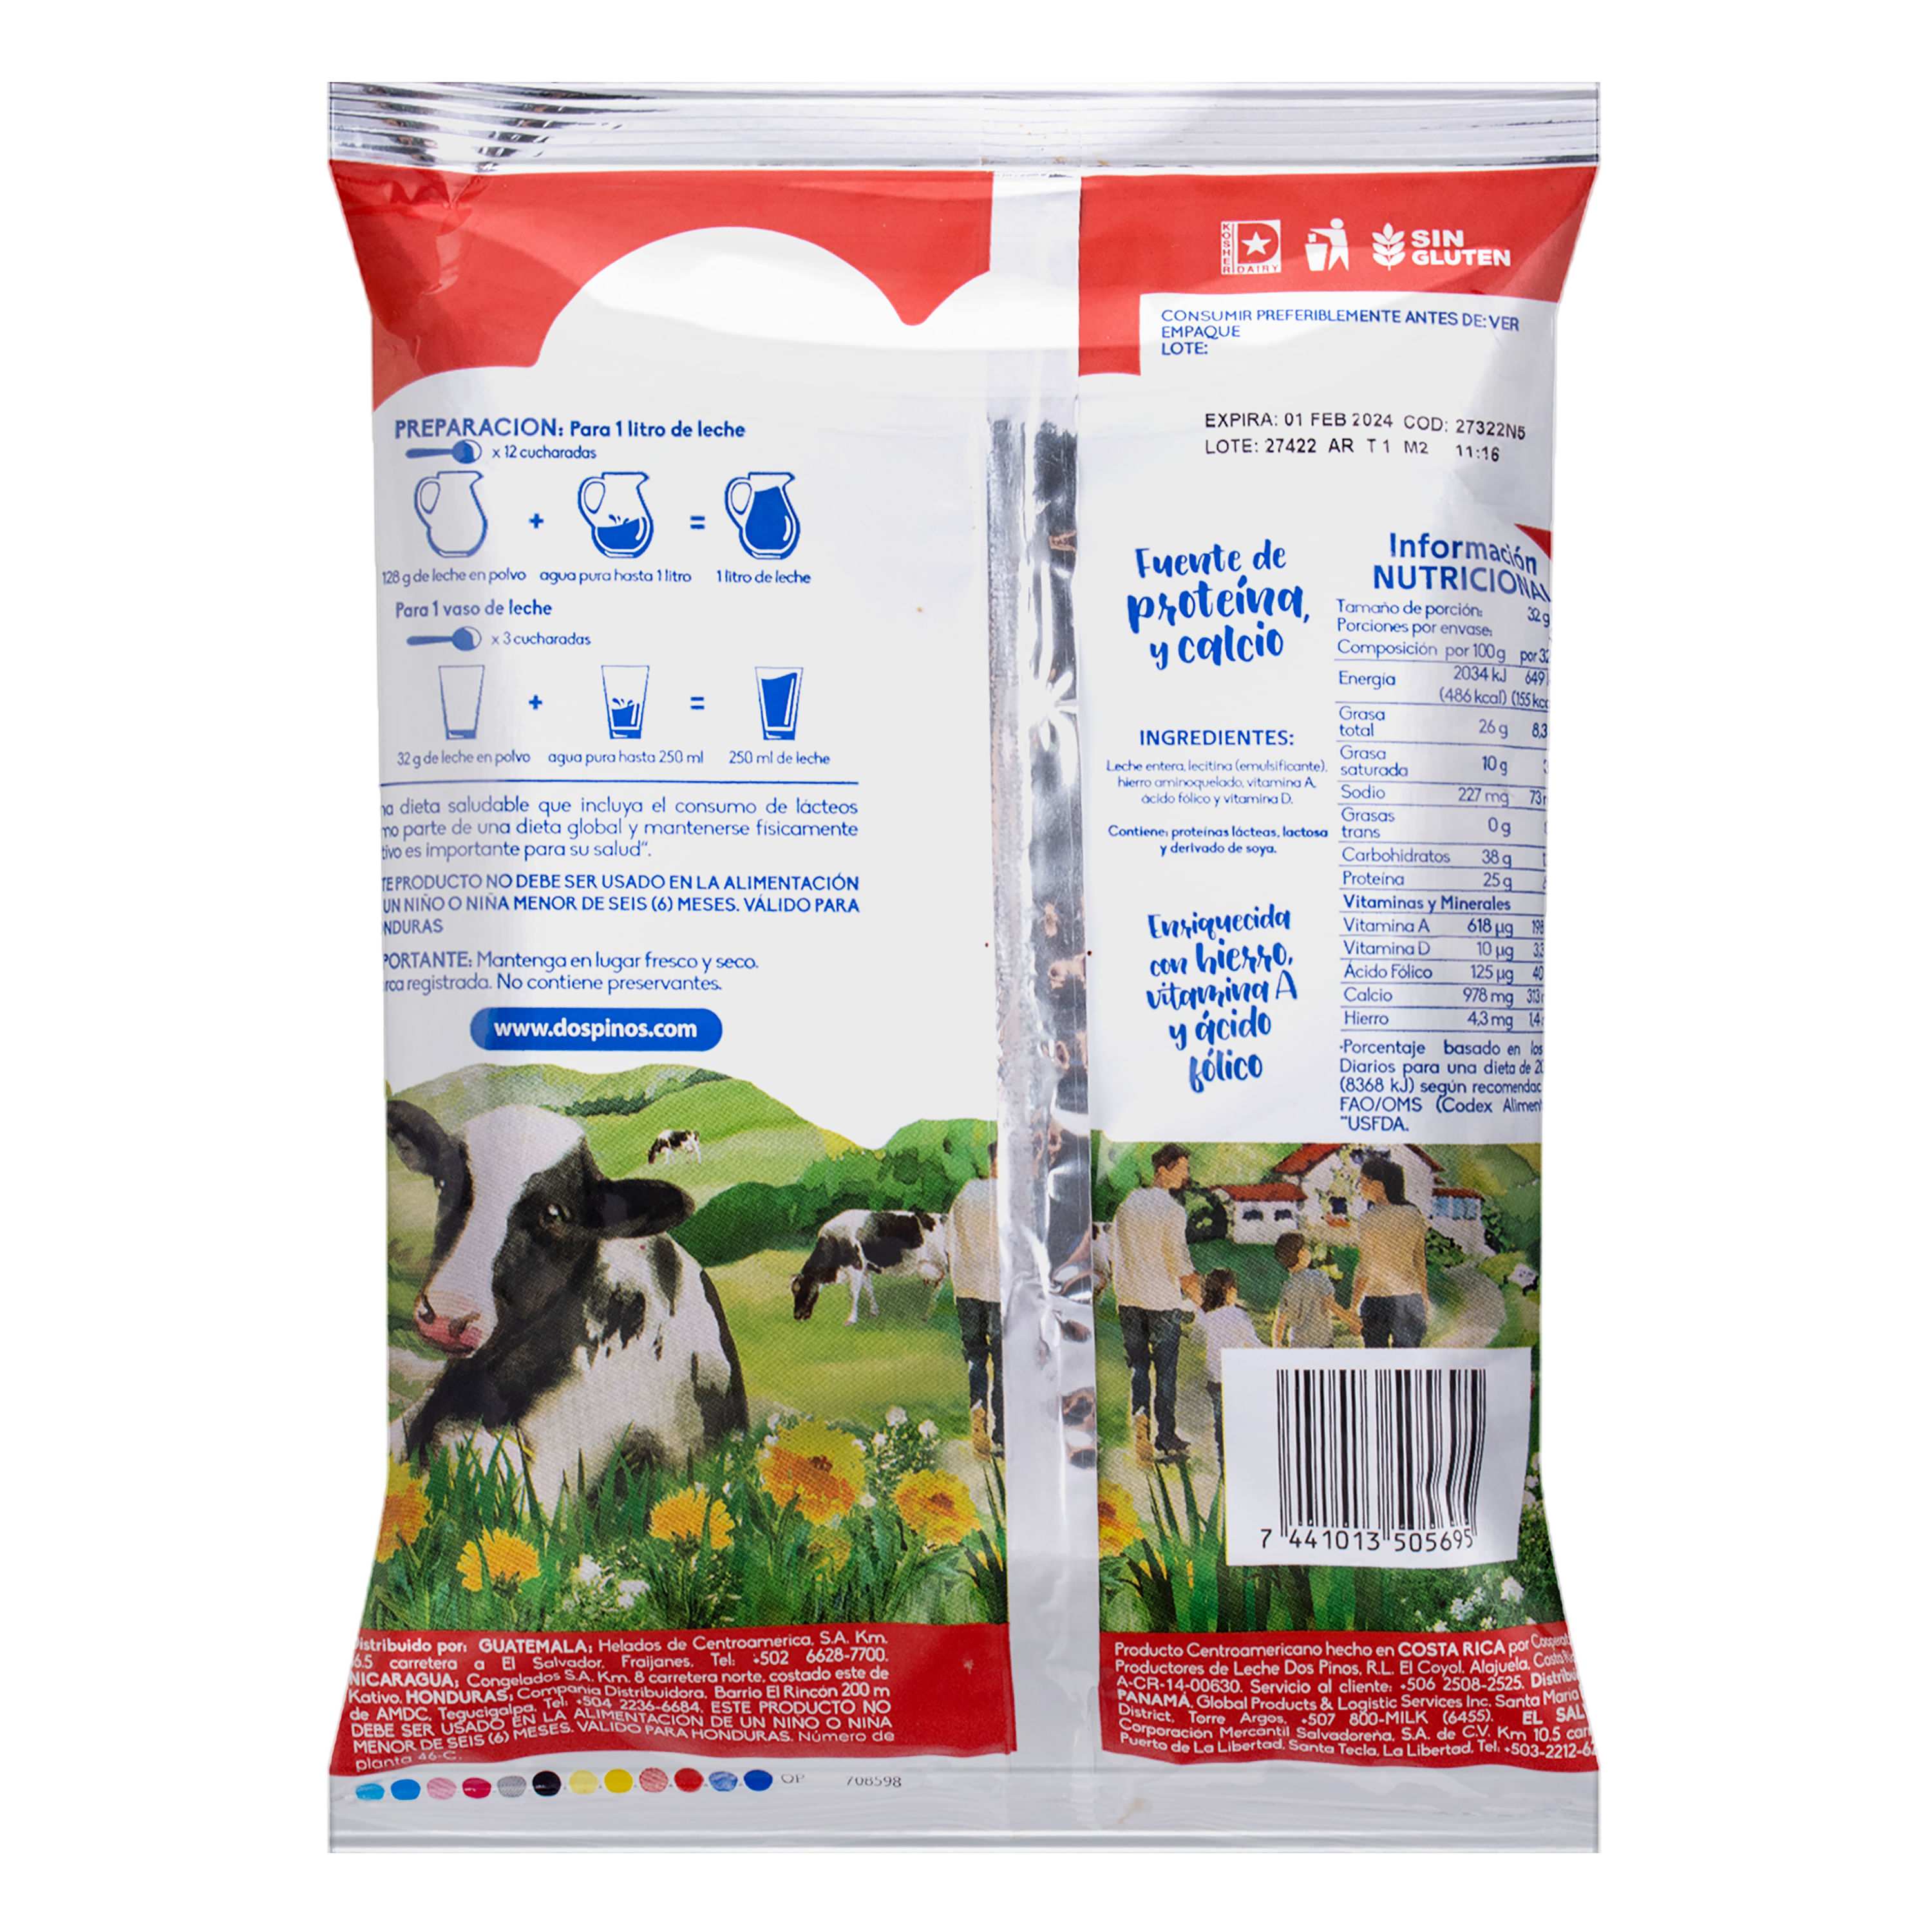 Comprar Leche Entera Coronado En Polvo, 100% De Vaca - 350g